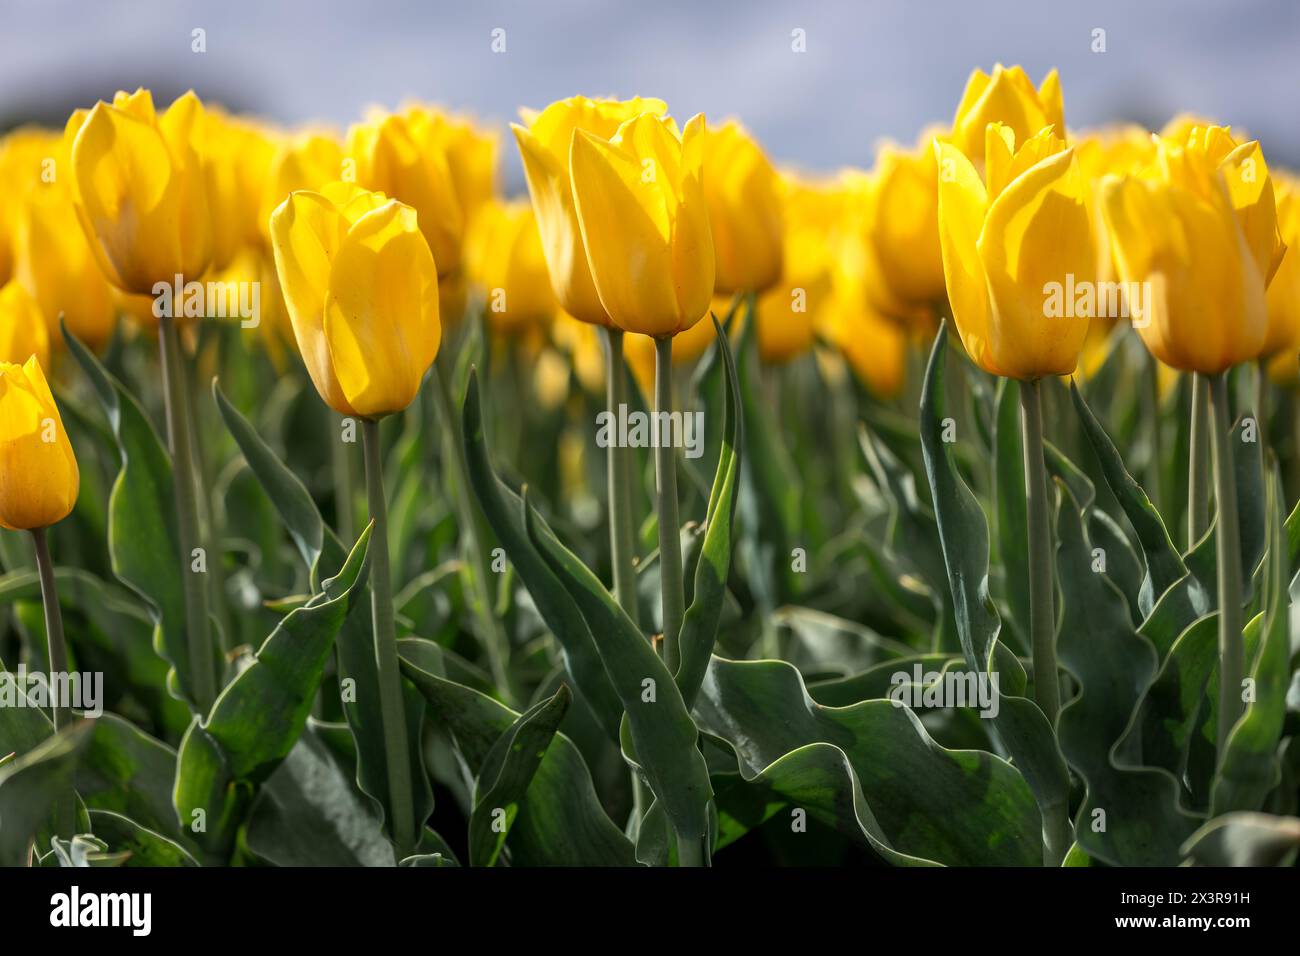 Primo piano di un campo di tulipani gialli in primavera coltivato dai coltivatori olandesi nella provincia di Drenthe, un'attrazione turistica lungo i campi olandesi Foto Stock